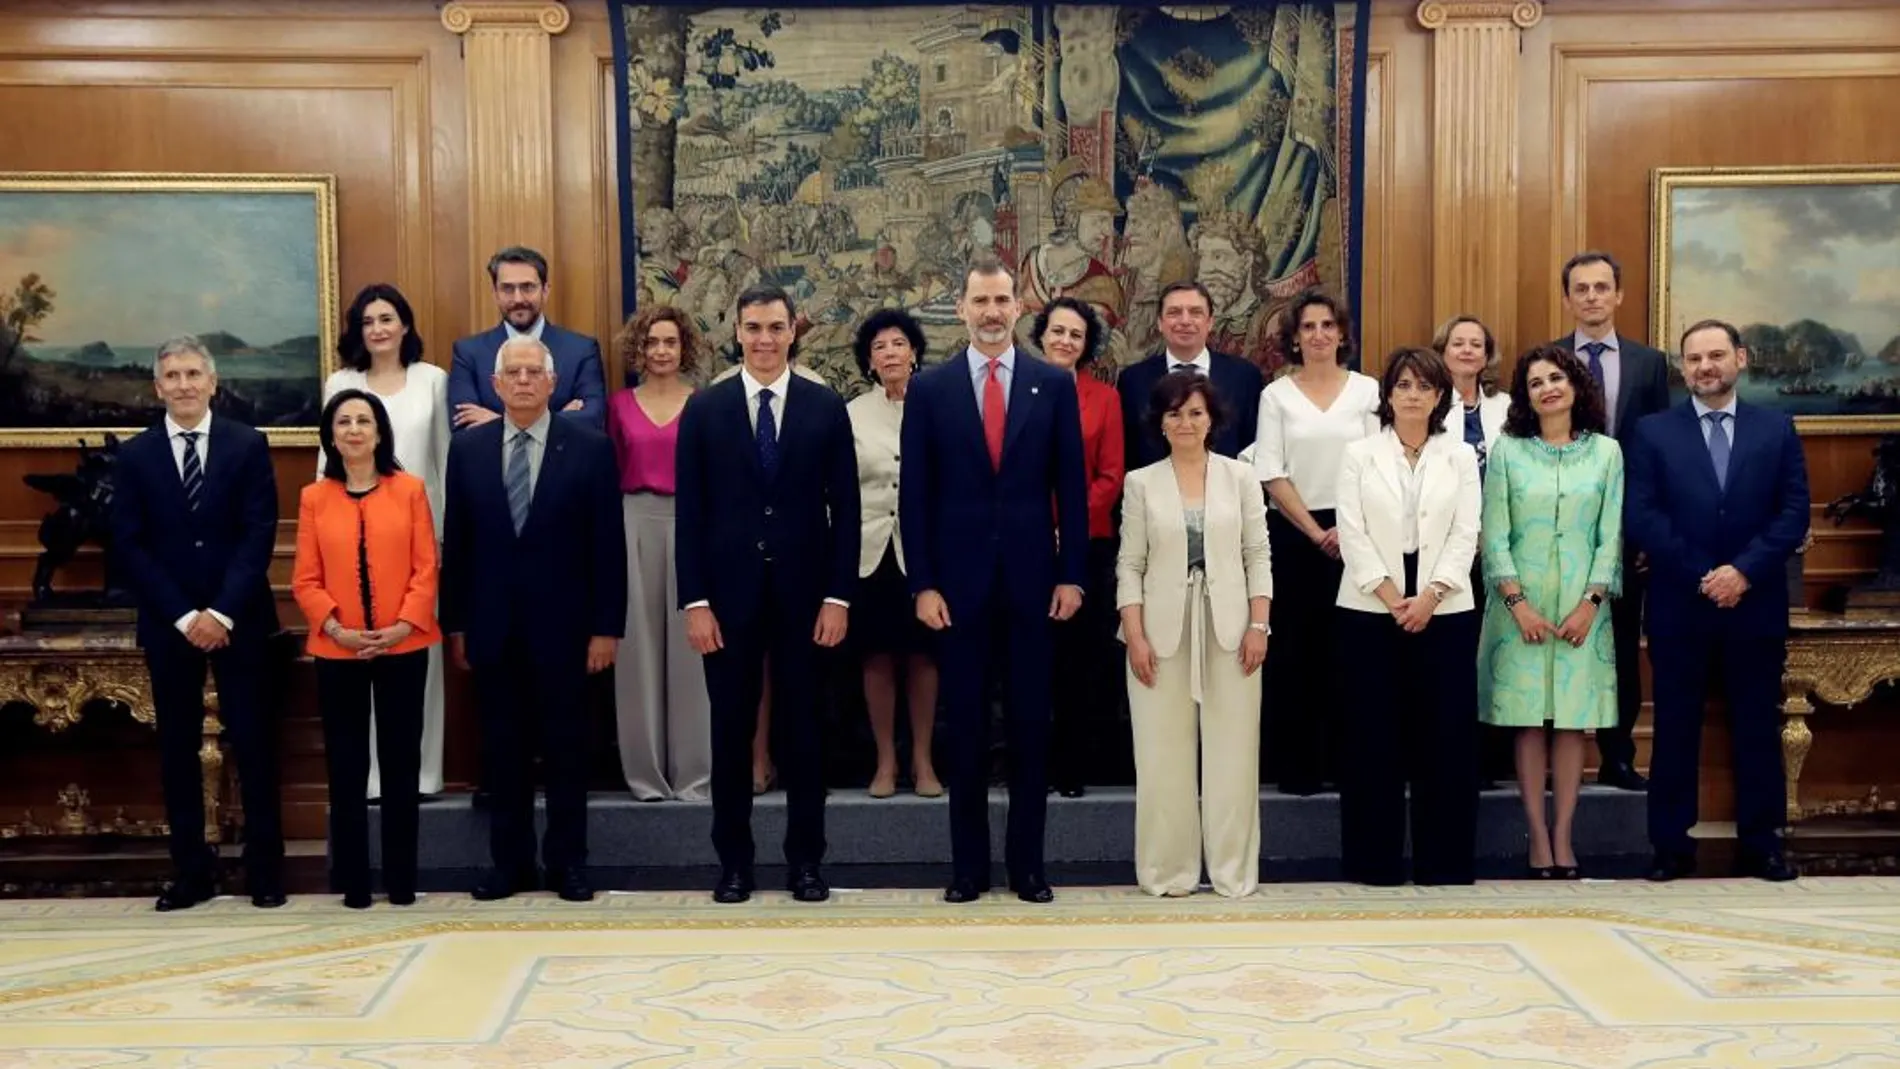 El Rey Felipe VI y el presidente del gobierno Pedro Sánchez, posan tras la promesa del cargo de los nuevos ministros/Efe